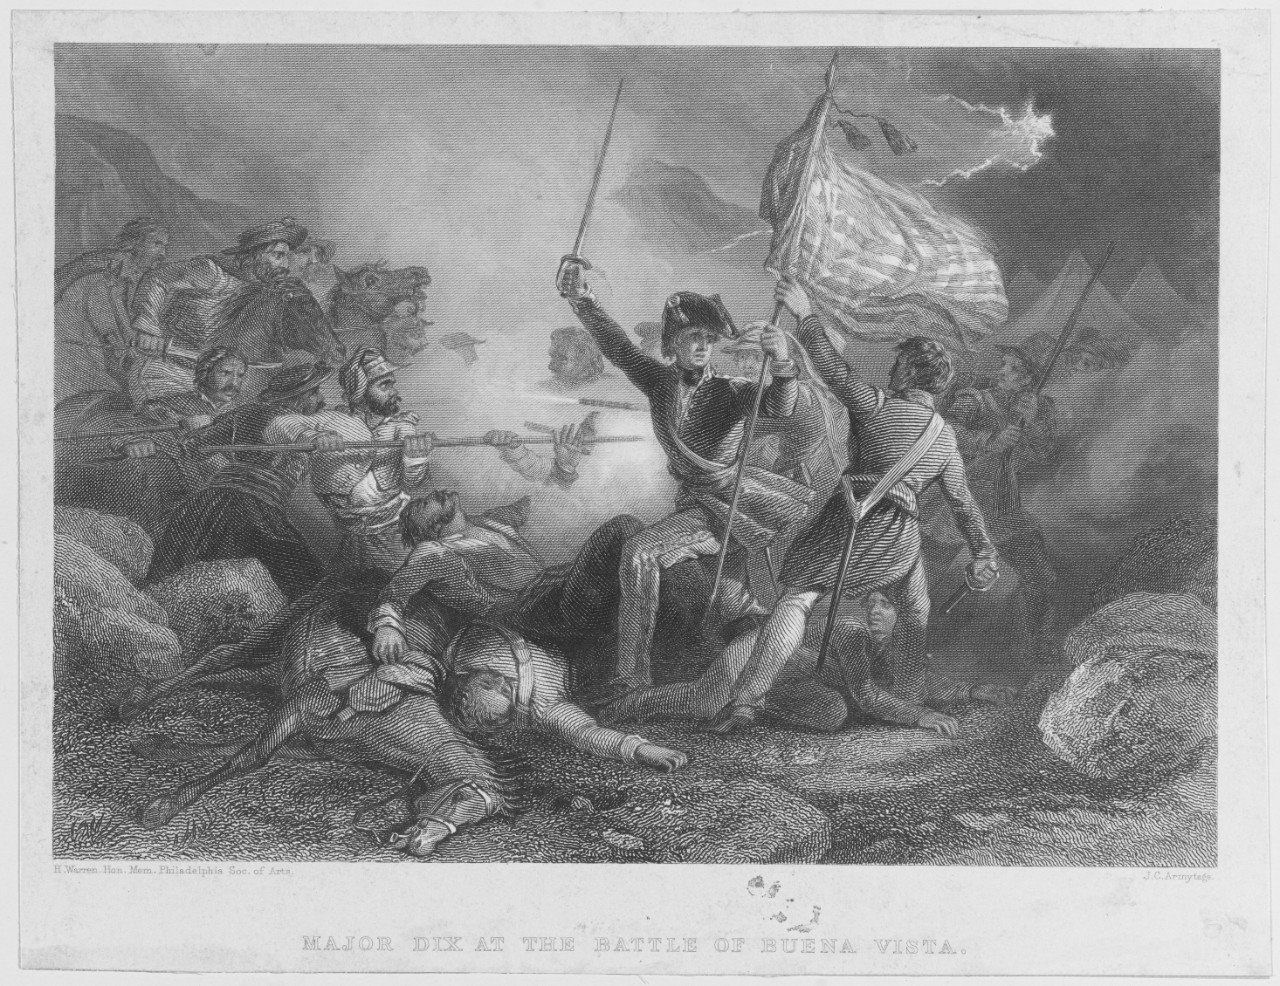 Major Dix at the Battle of Buena Vista, February 23, 1847